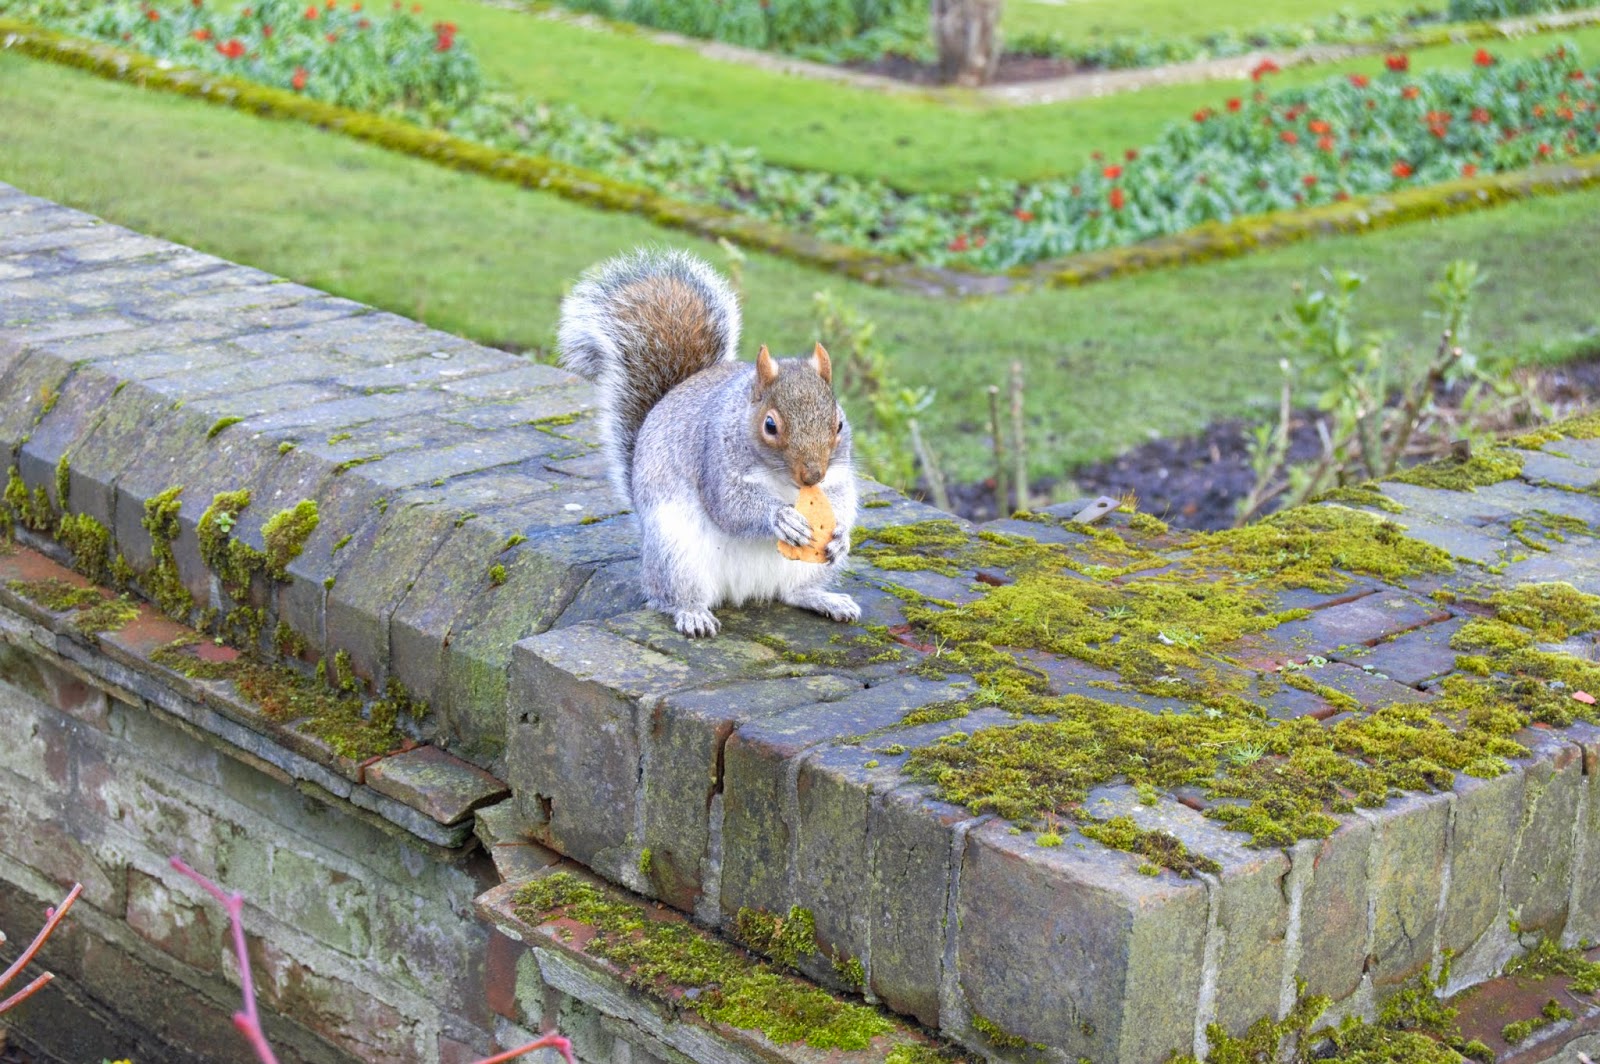 A squirrel eating a cracker in Kensington Gardens